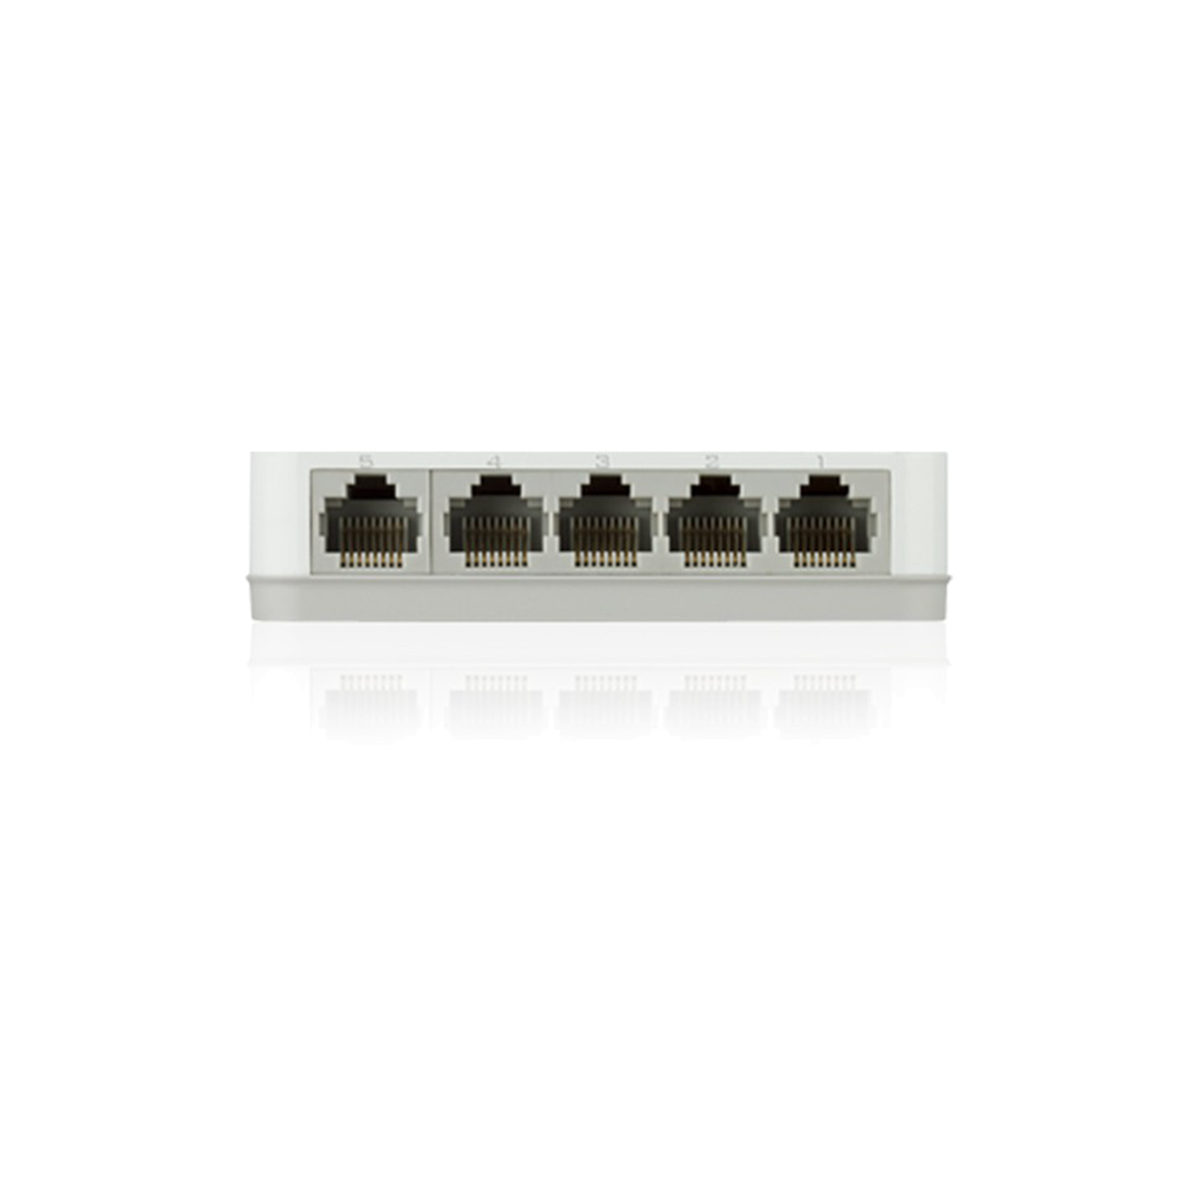 D-Link DGS-1005A 5-Port Unmanaged Gigabit Desktop Switch In Plastic Casing